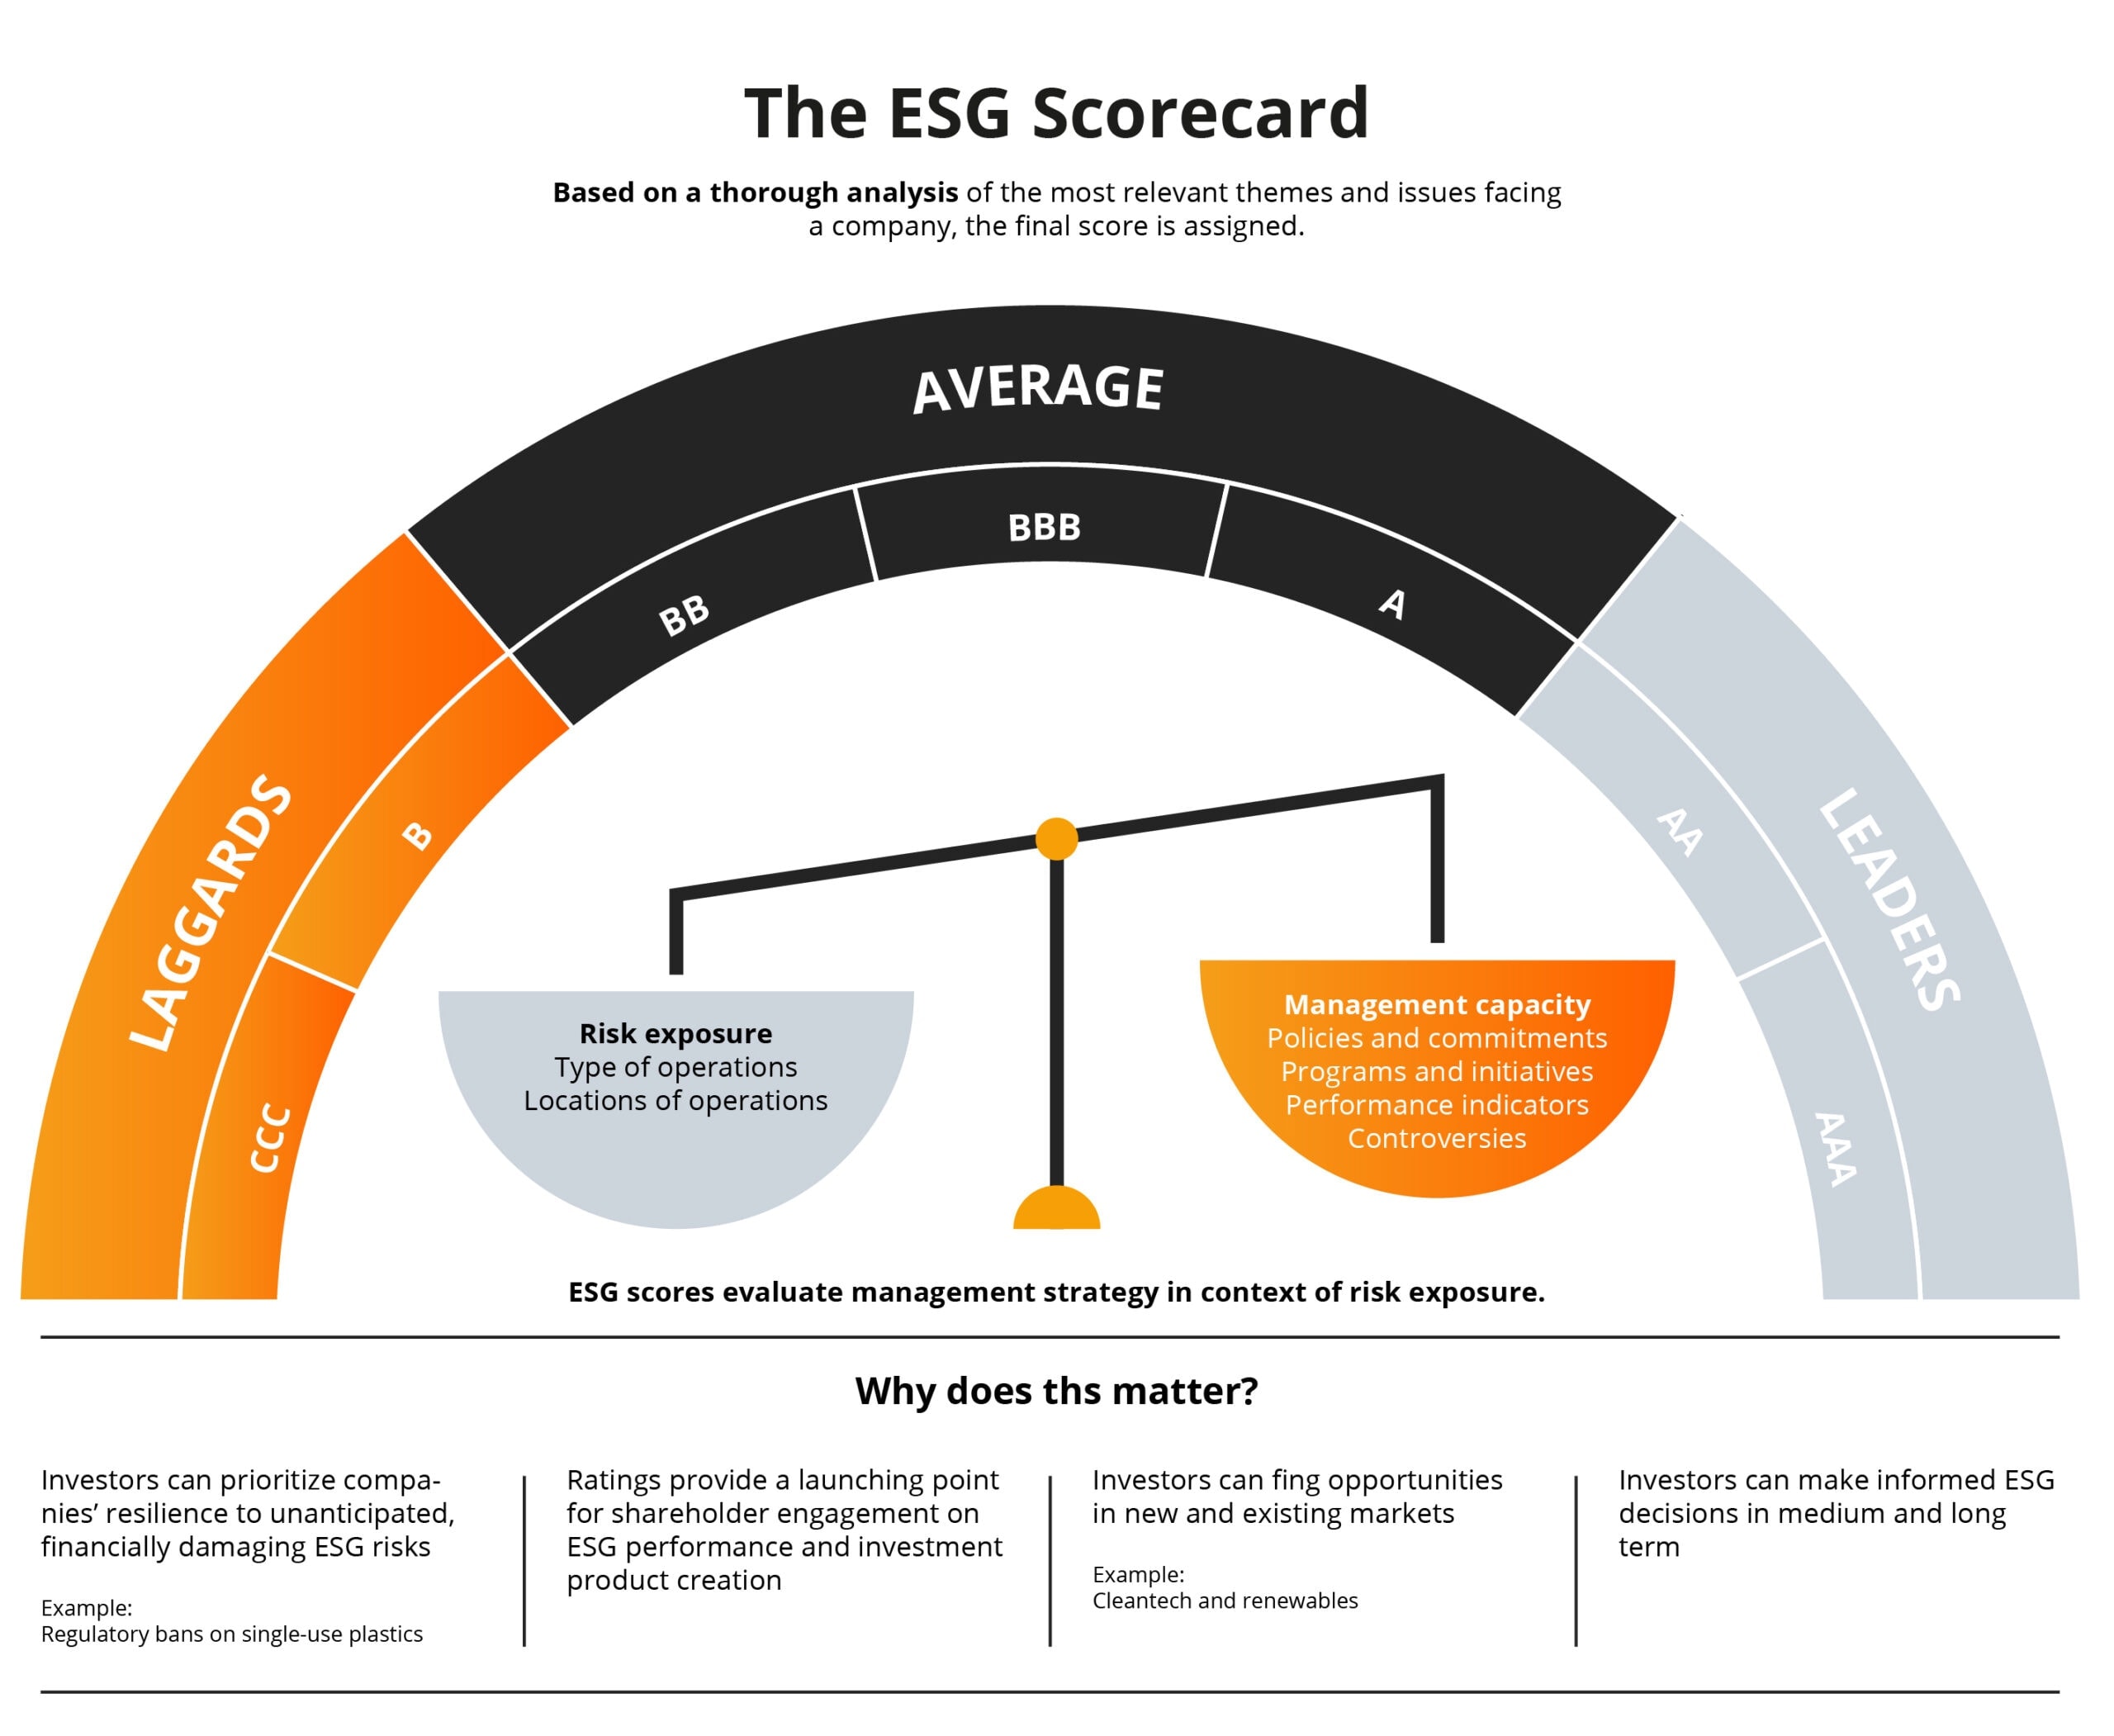 The ESG Scorecard